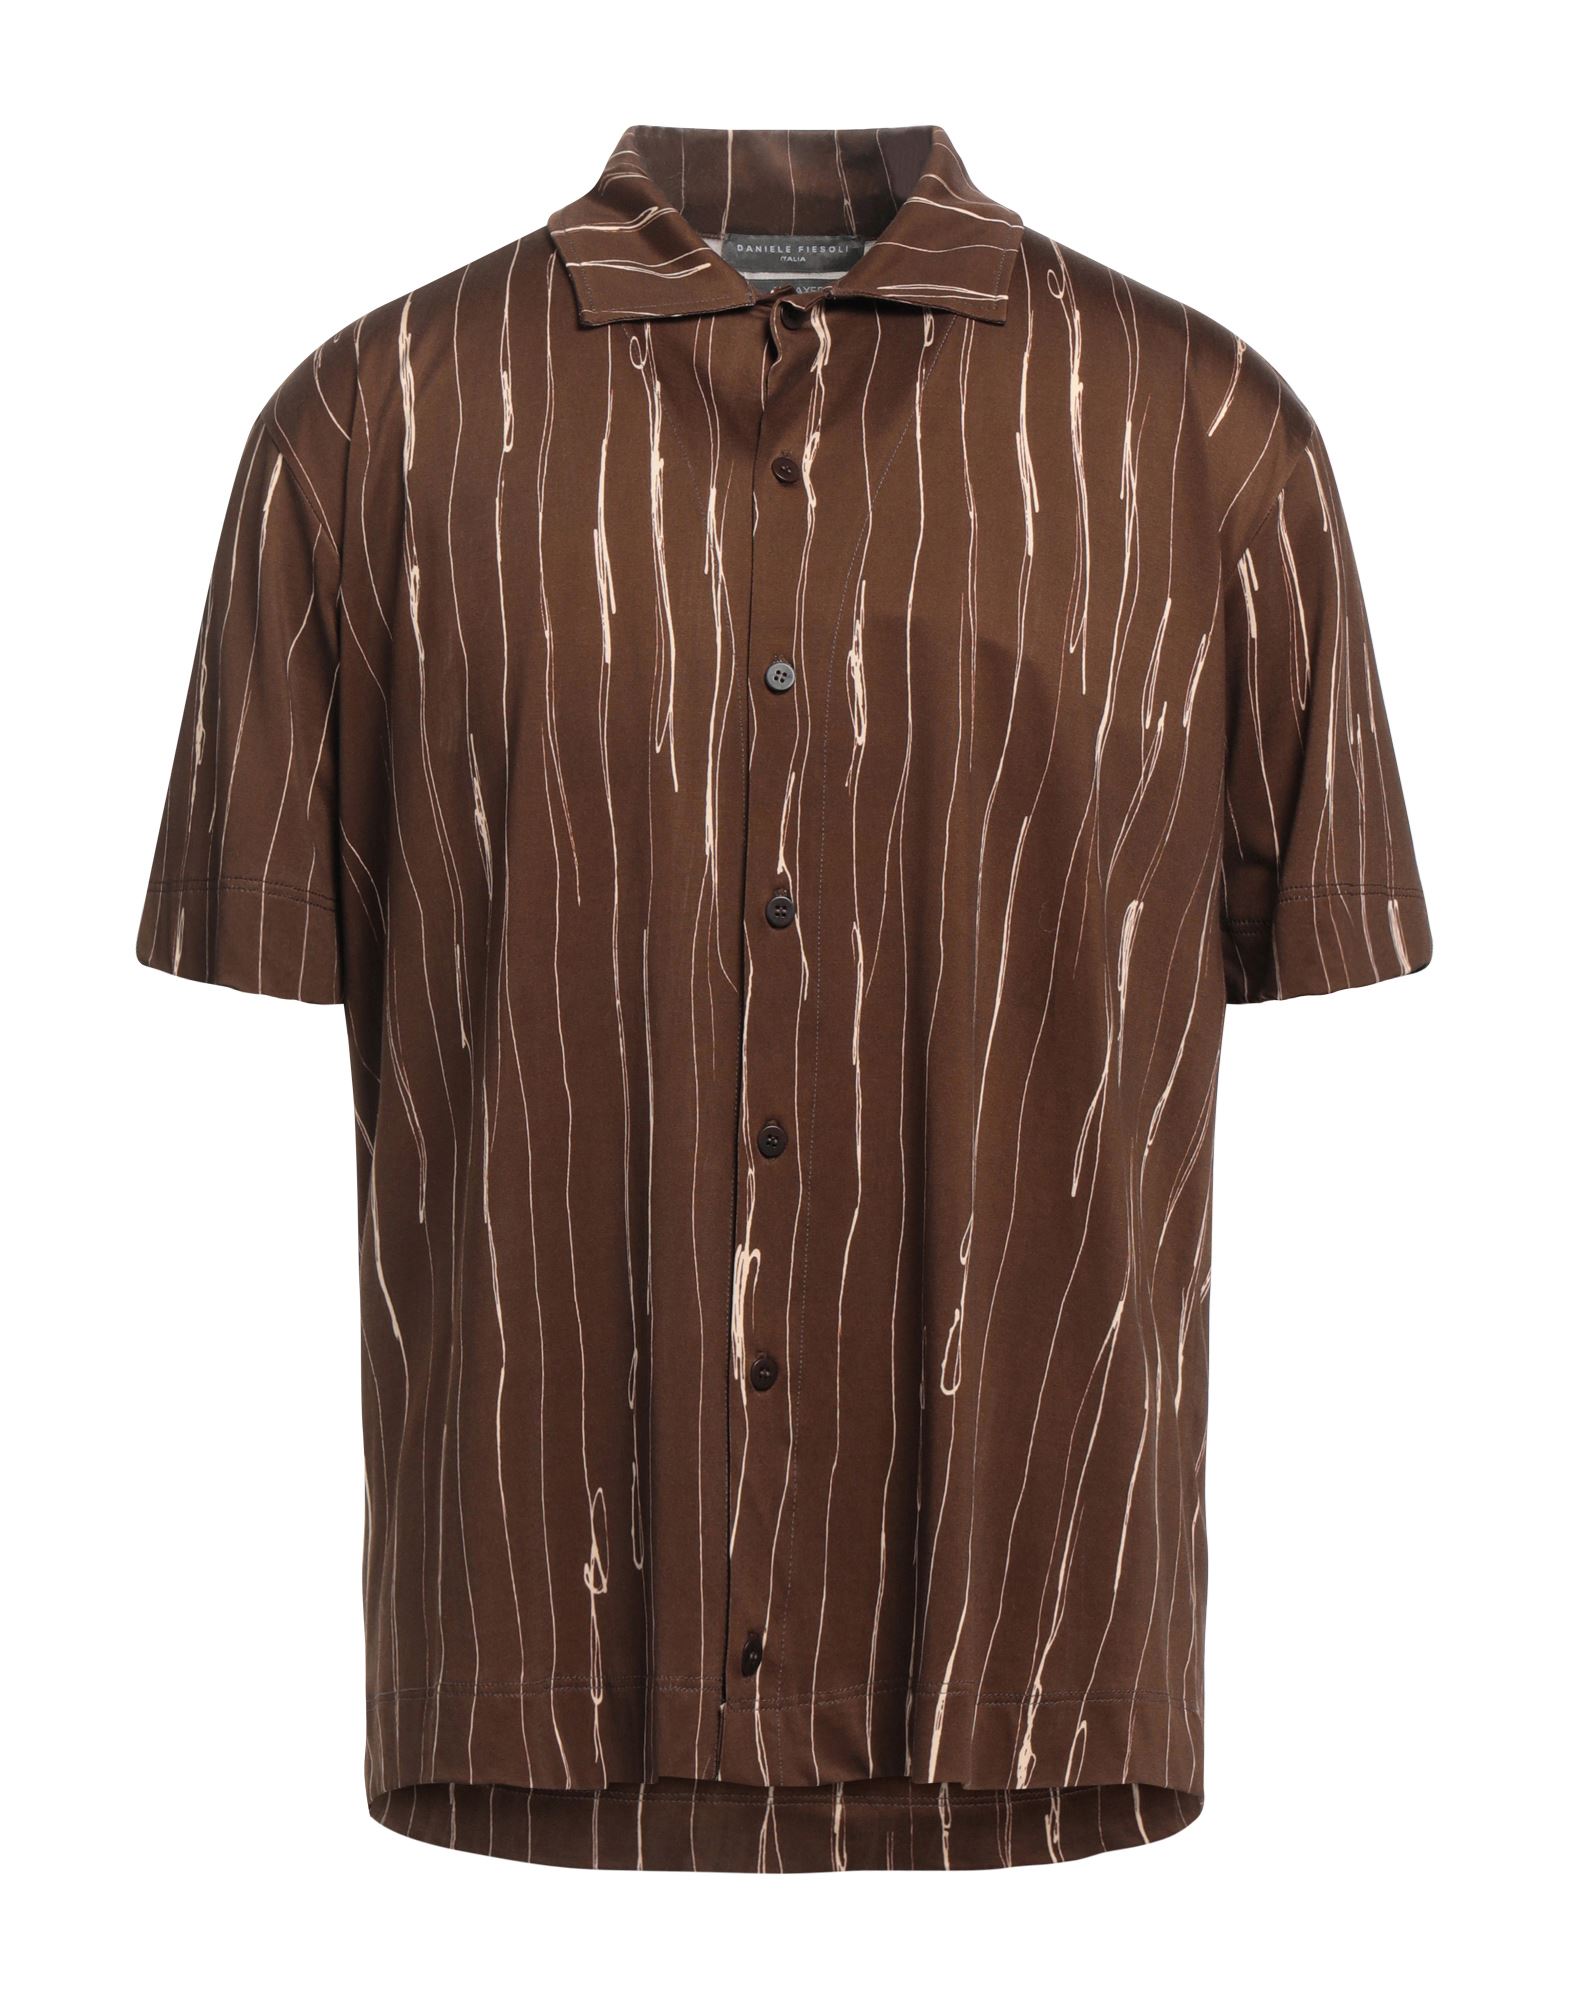 Daniele Fiesoli Shirts In Brown